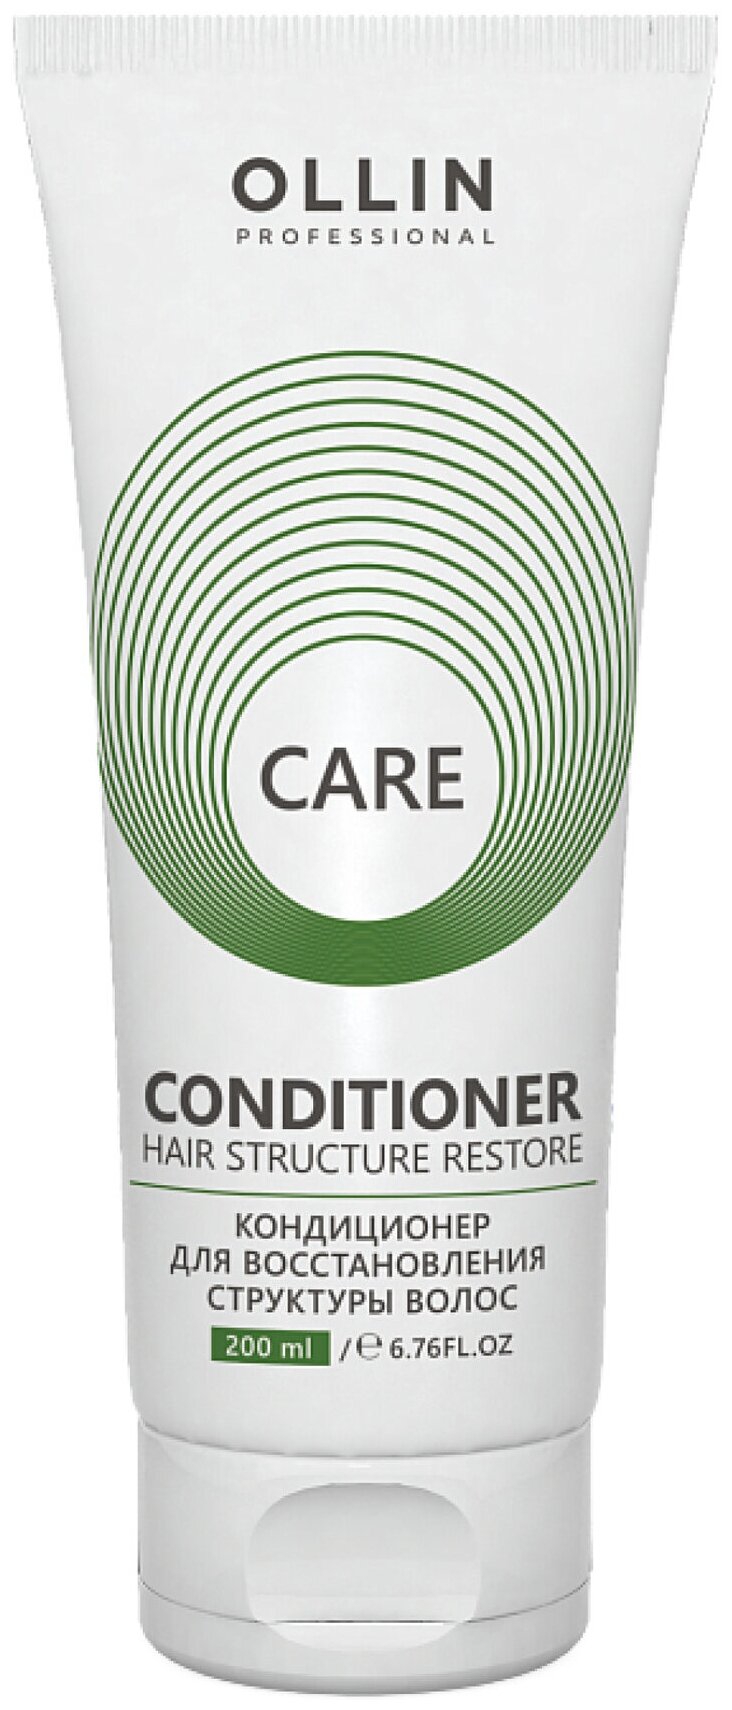 OLLIN Professional кондиционер для восстановления структуры волос Care Restore, 200 мл